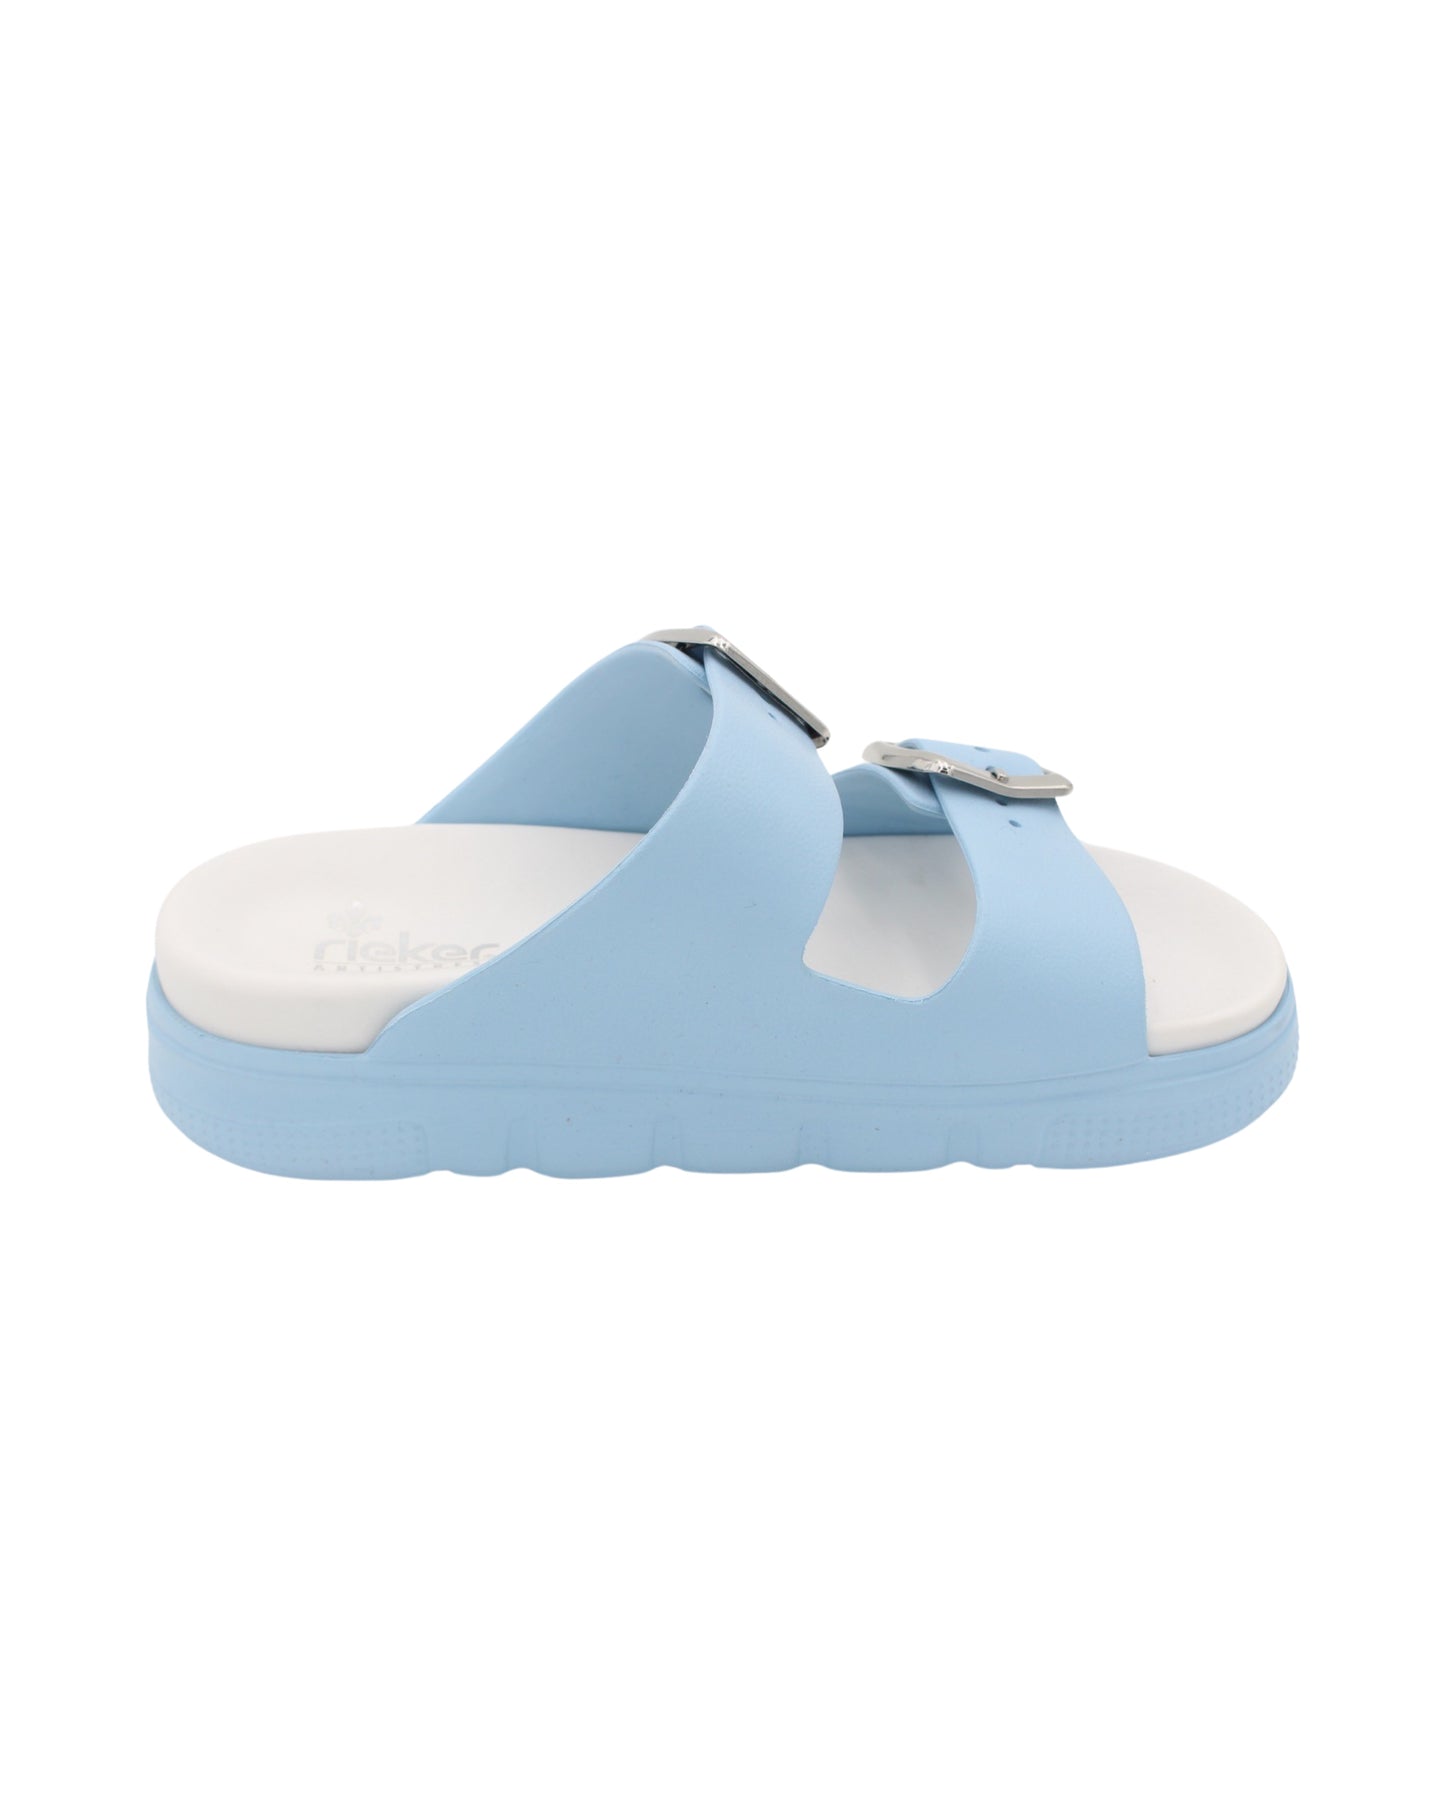 Rieker - Ladies Shoes Sandals Blue (2197)